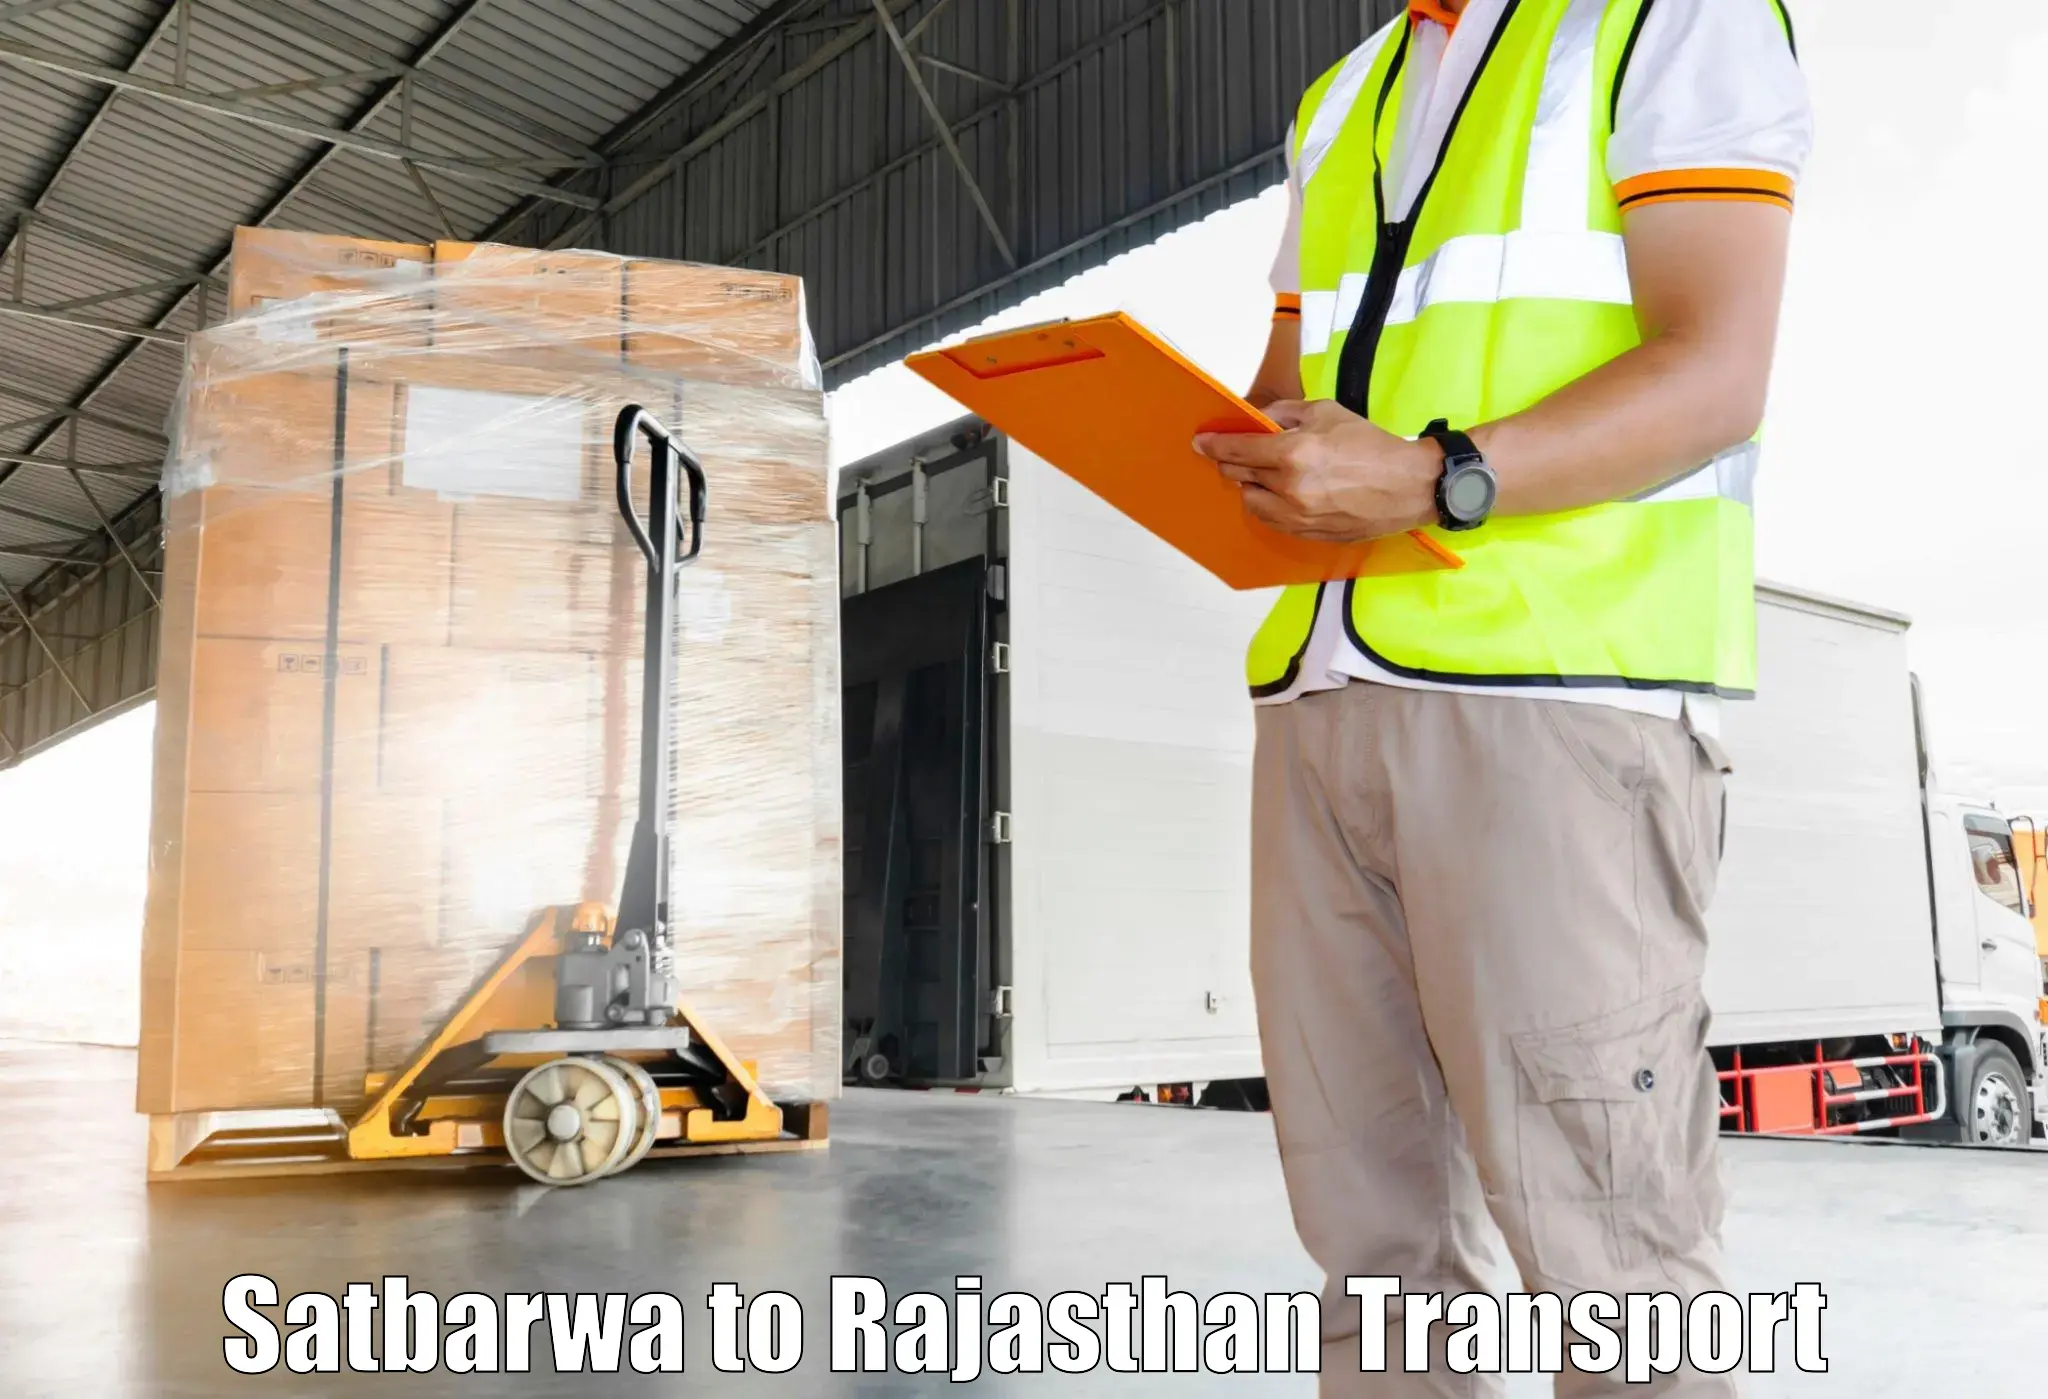 Delivery service Satbarwa to Fatehnagar